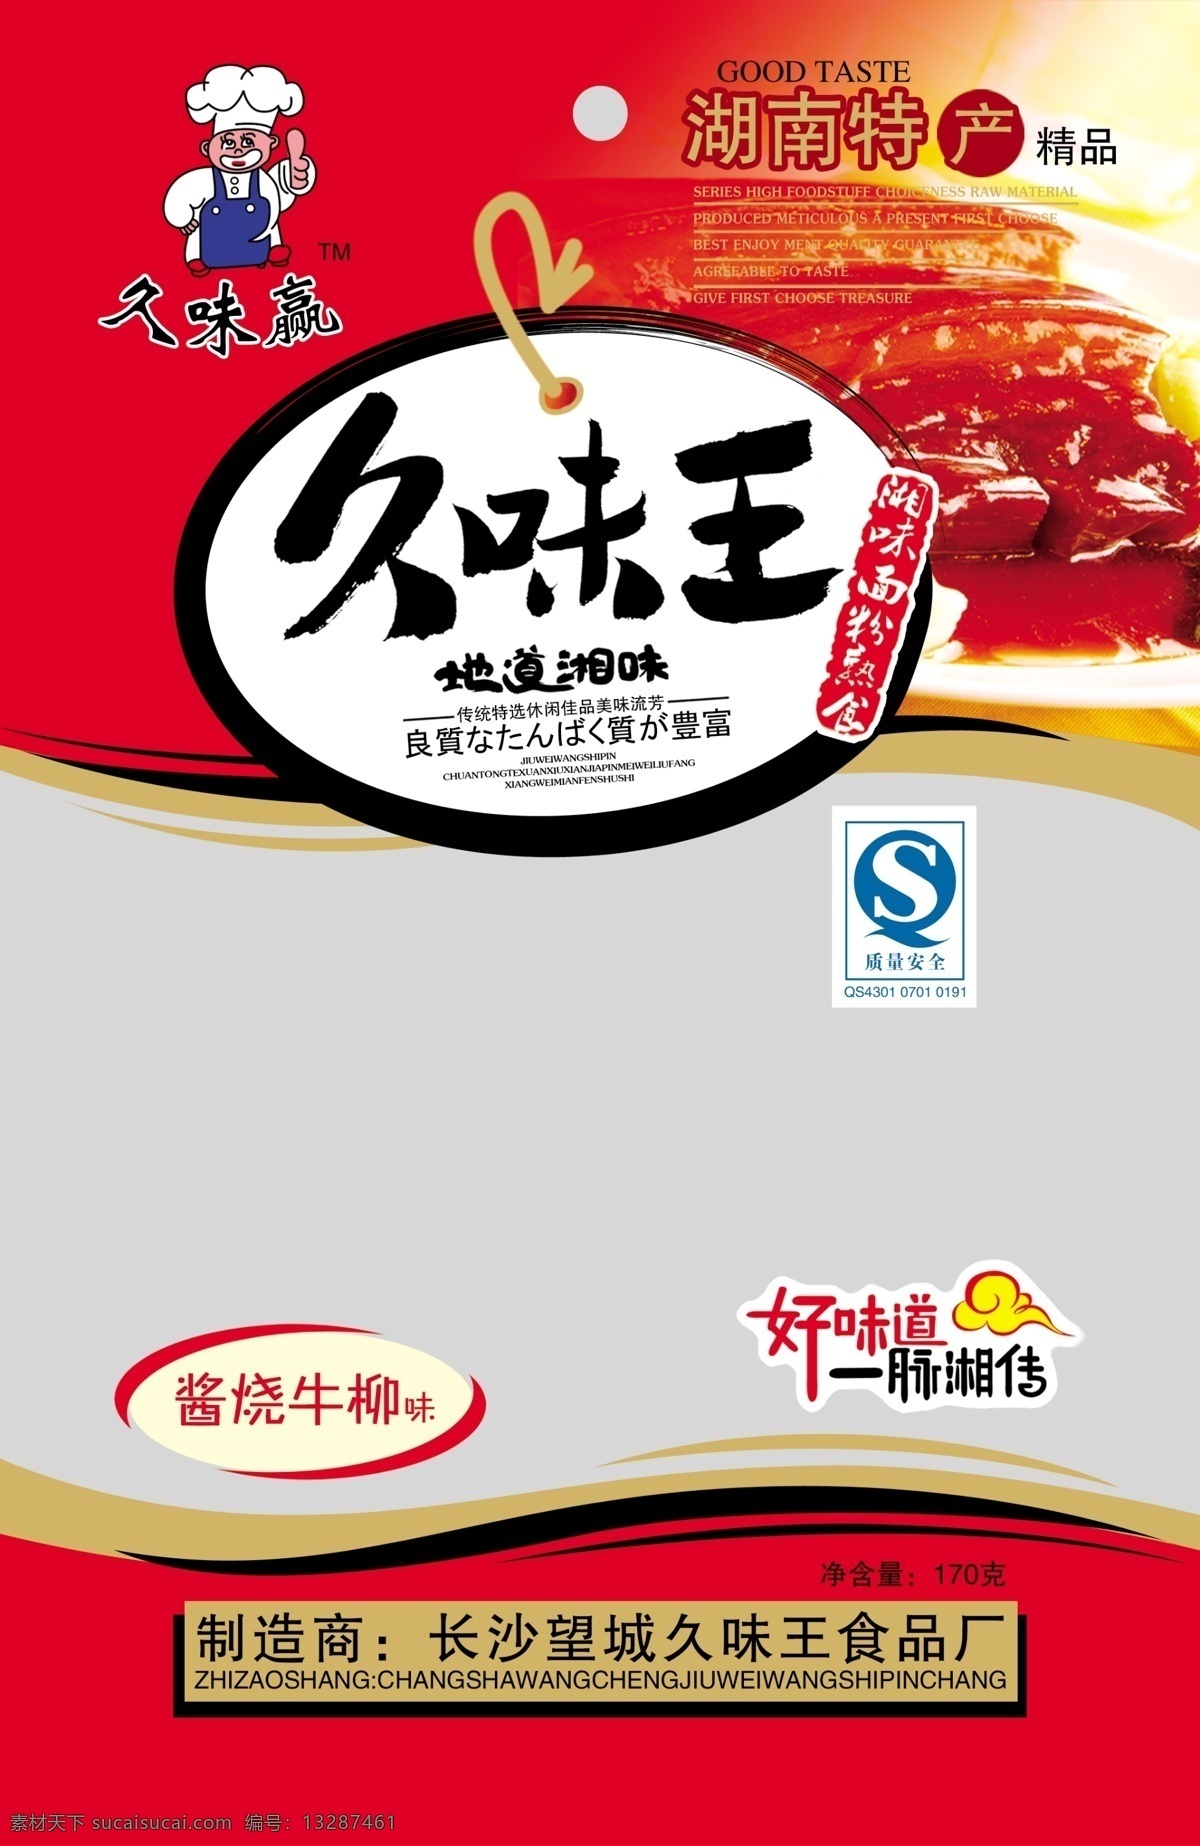 久 味 王 熟食 包装 麻辣熟食包装 熟食包装 食品包装 卡通厨师 卡通 包装设计 广告设计模板 源文件